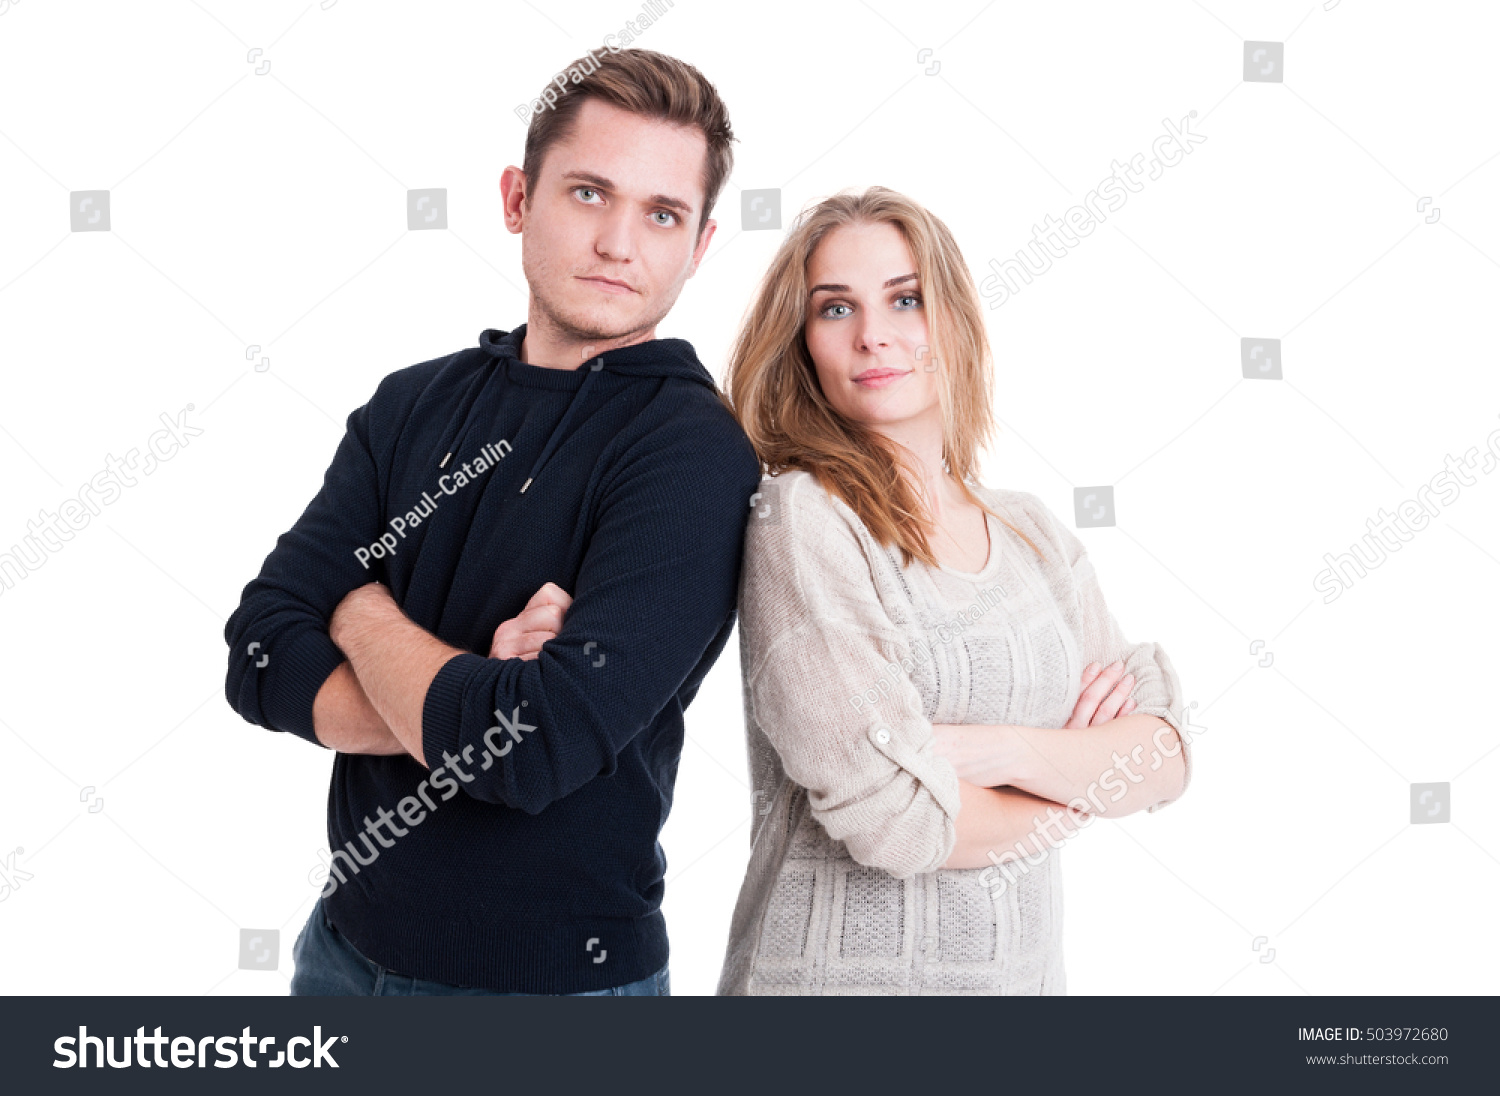 Парень и девушка стоят рядом